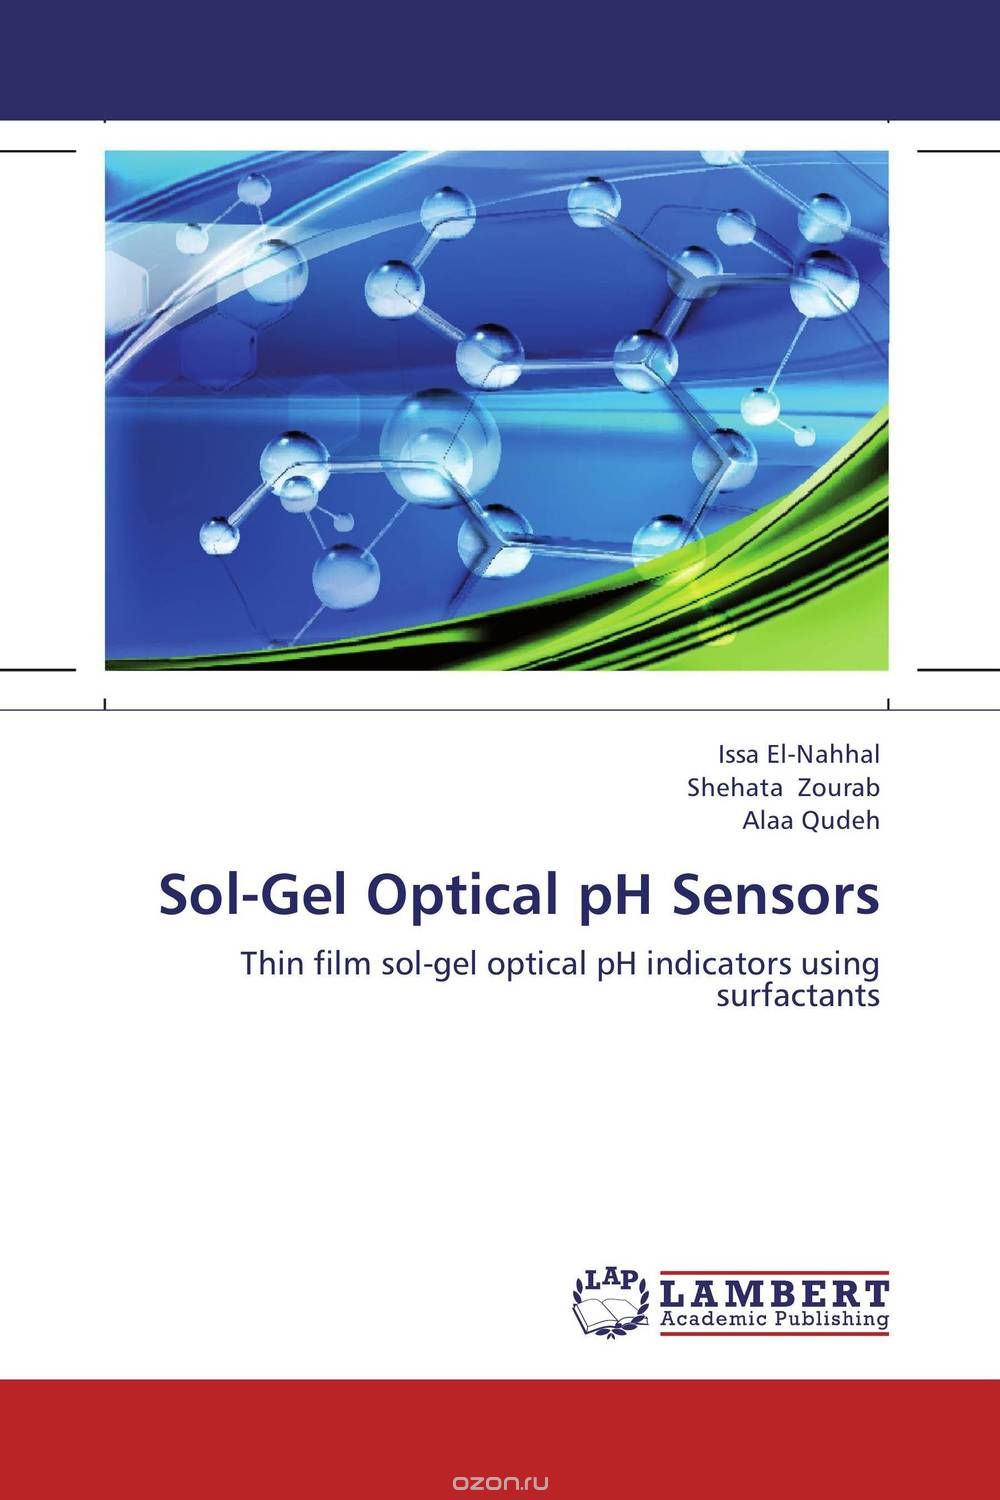 Скачать книгу "Sol-Gel Optical pH Sensors"